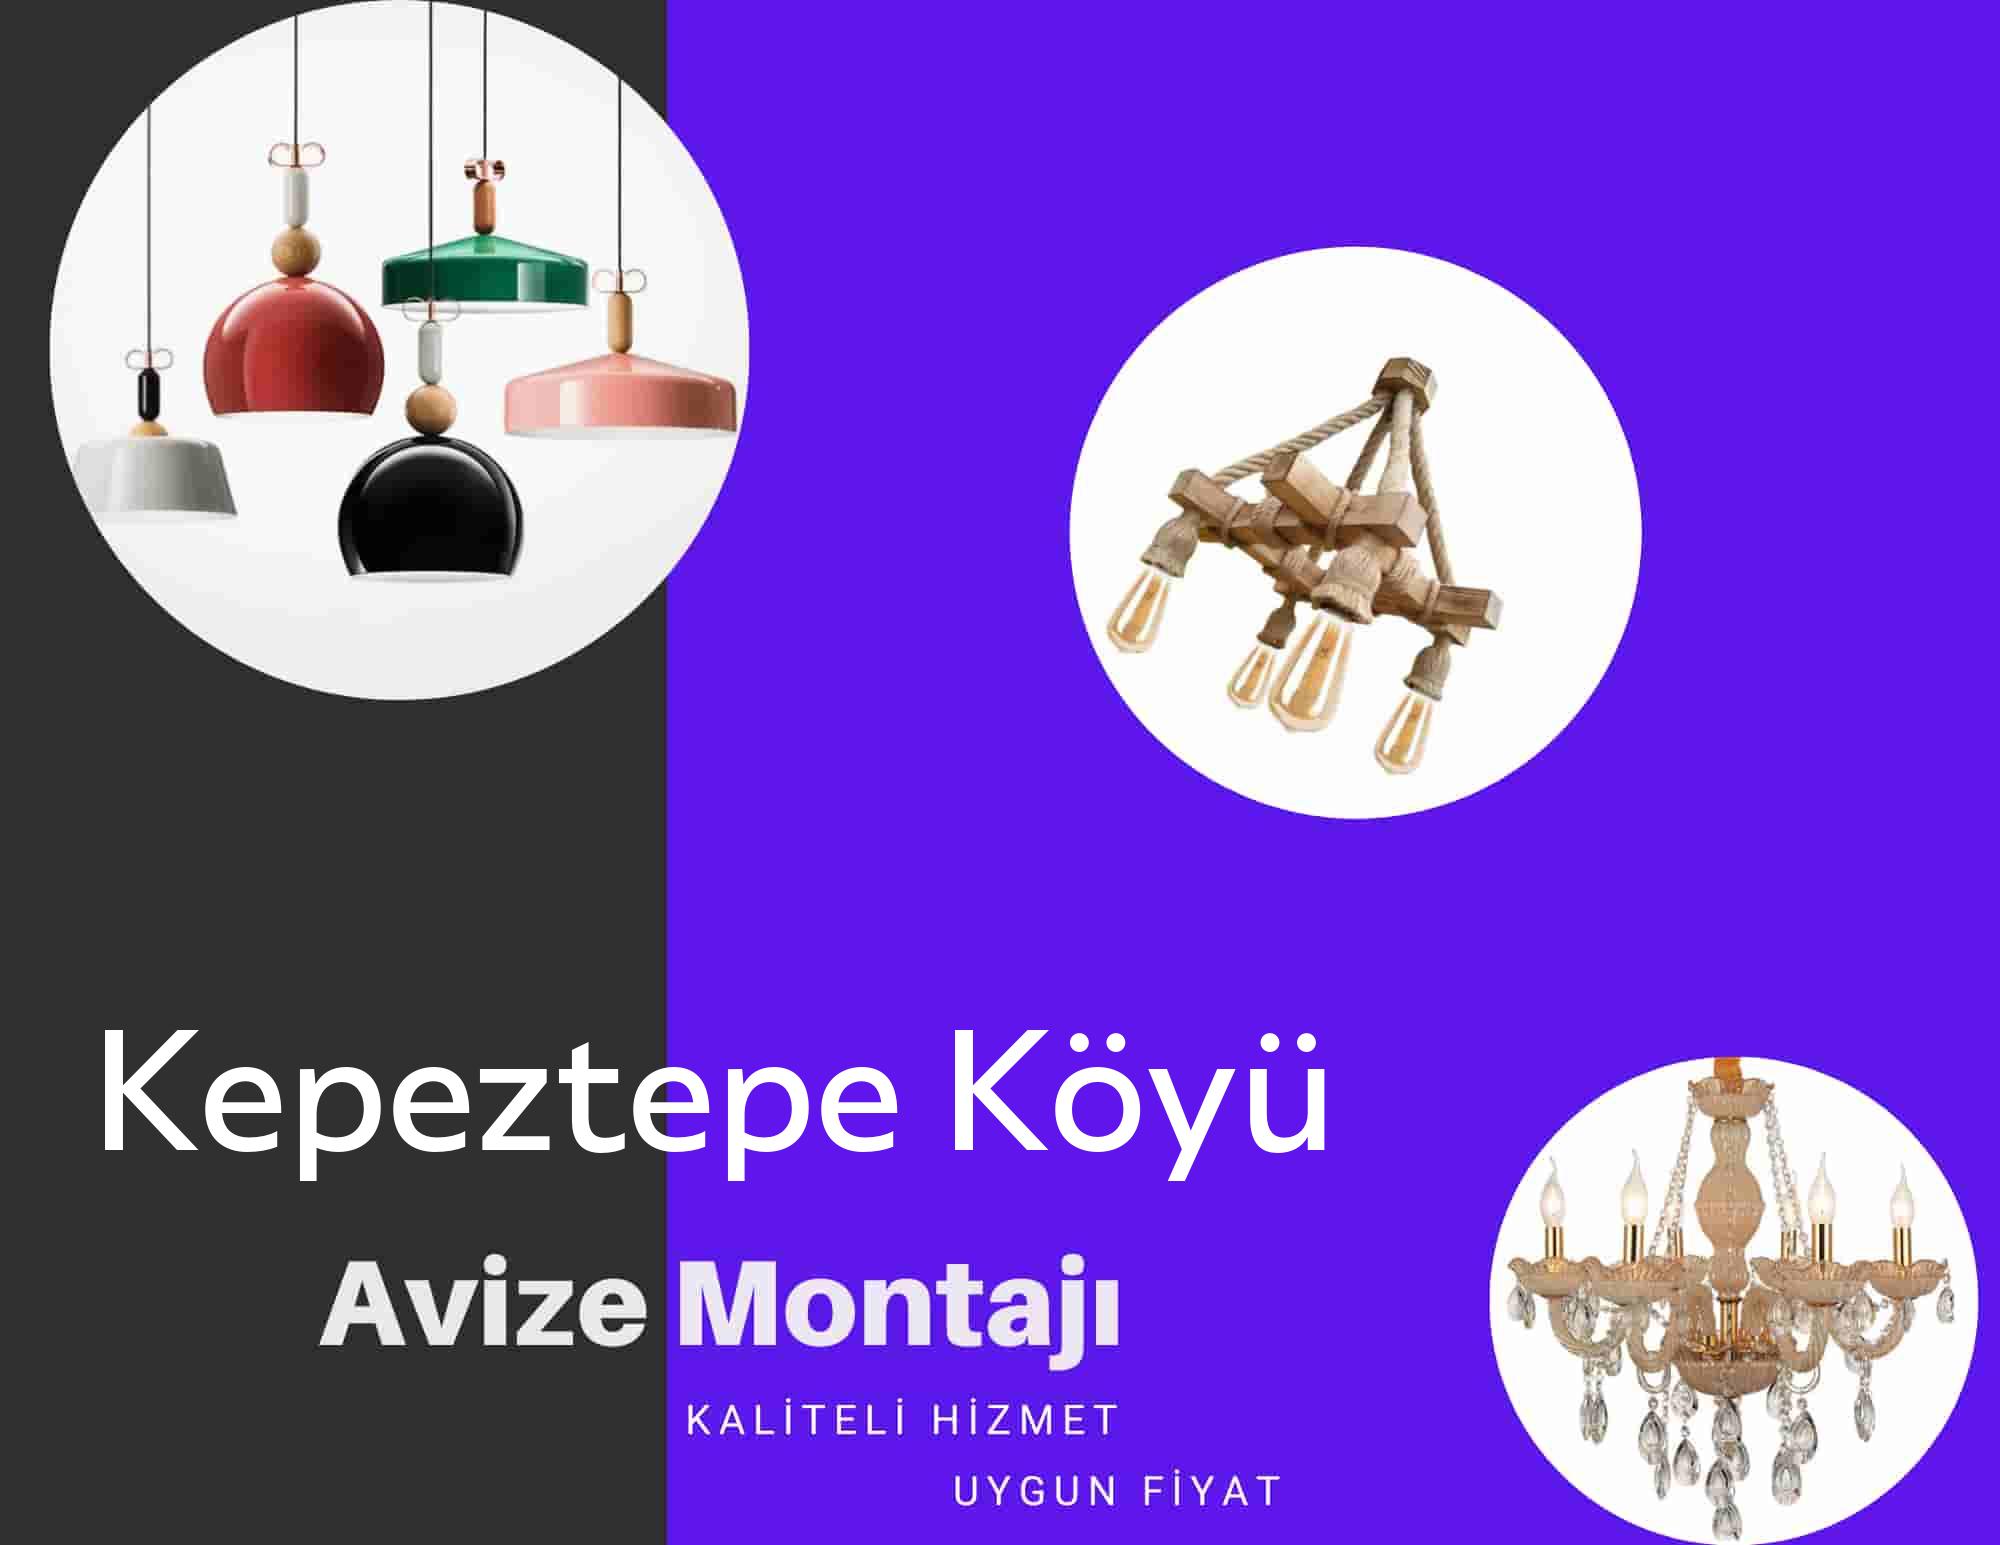 Kepeztepe Köyüde avize montajı yapan yerler arıyorsanız elektrikcicagir anında size profesyonel avize montajı ustasını yönlendirir.